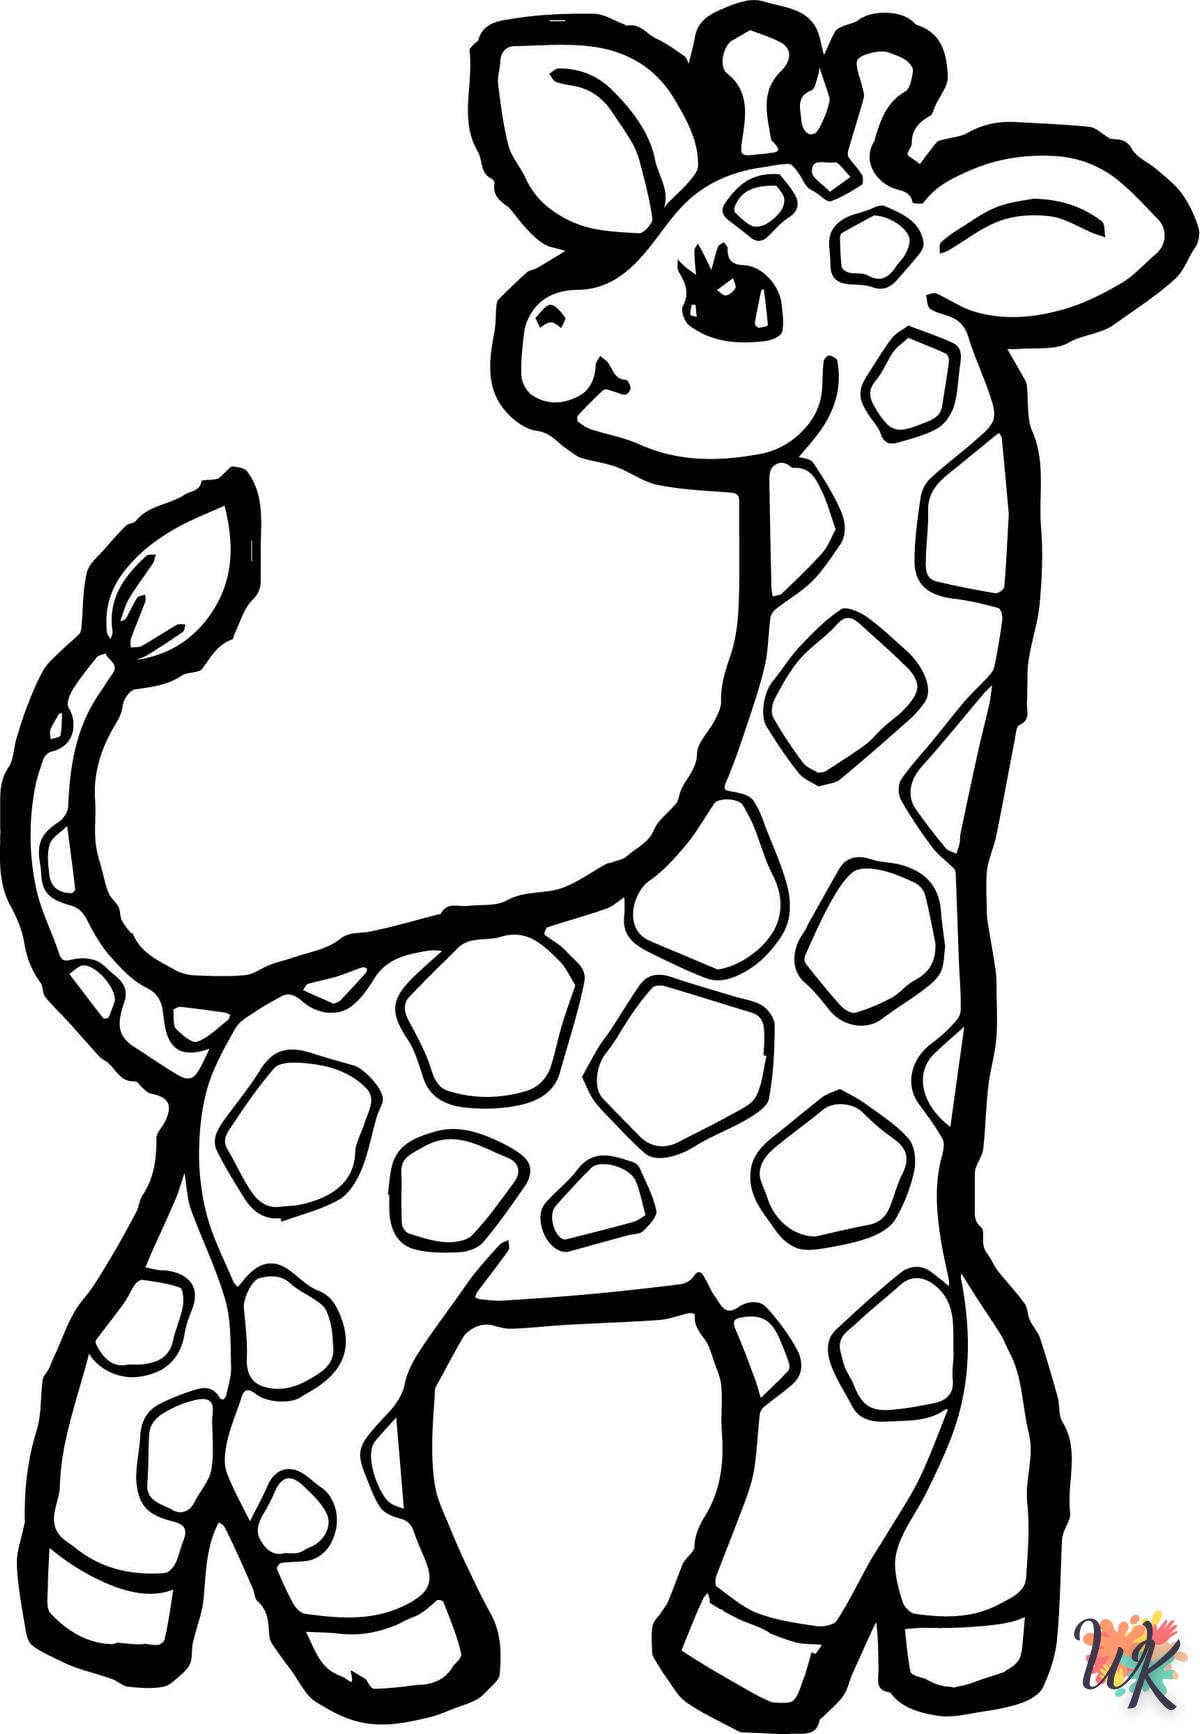 Giraffe kleurplaten4